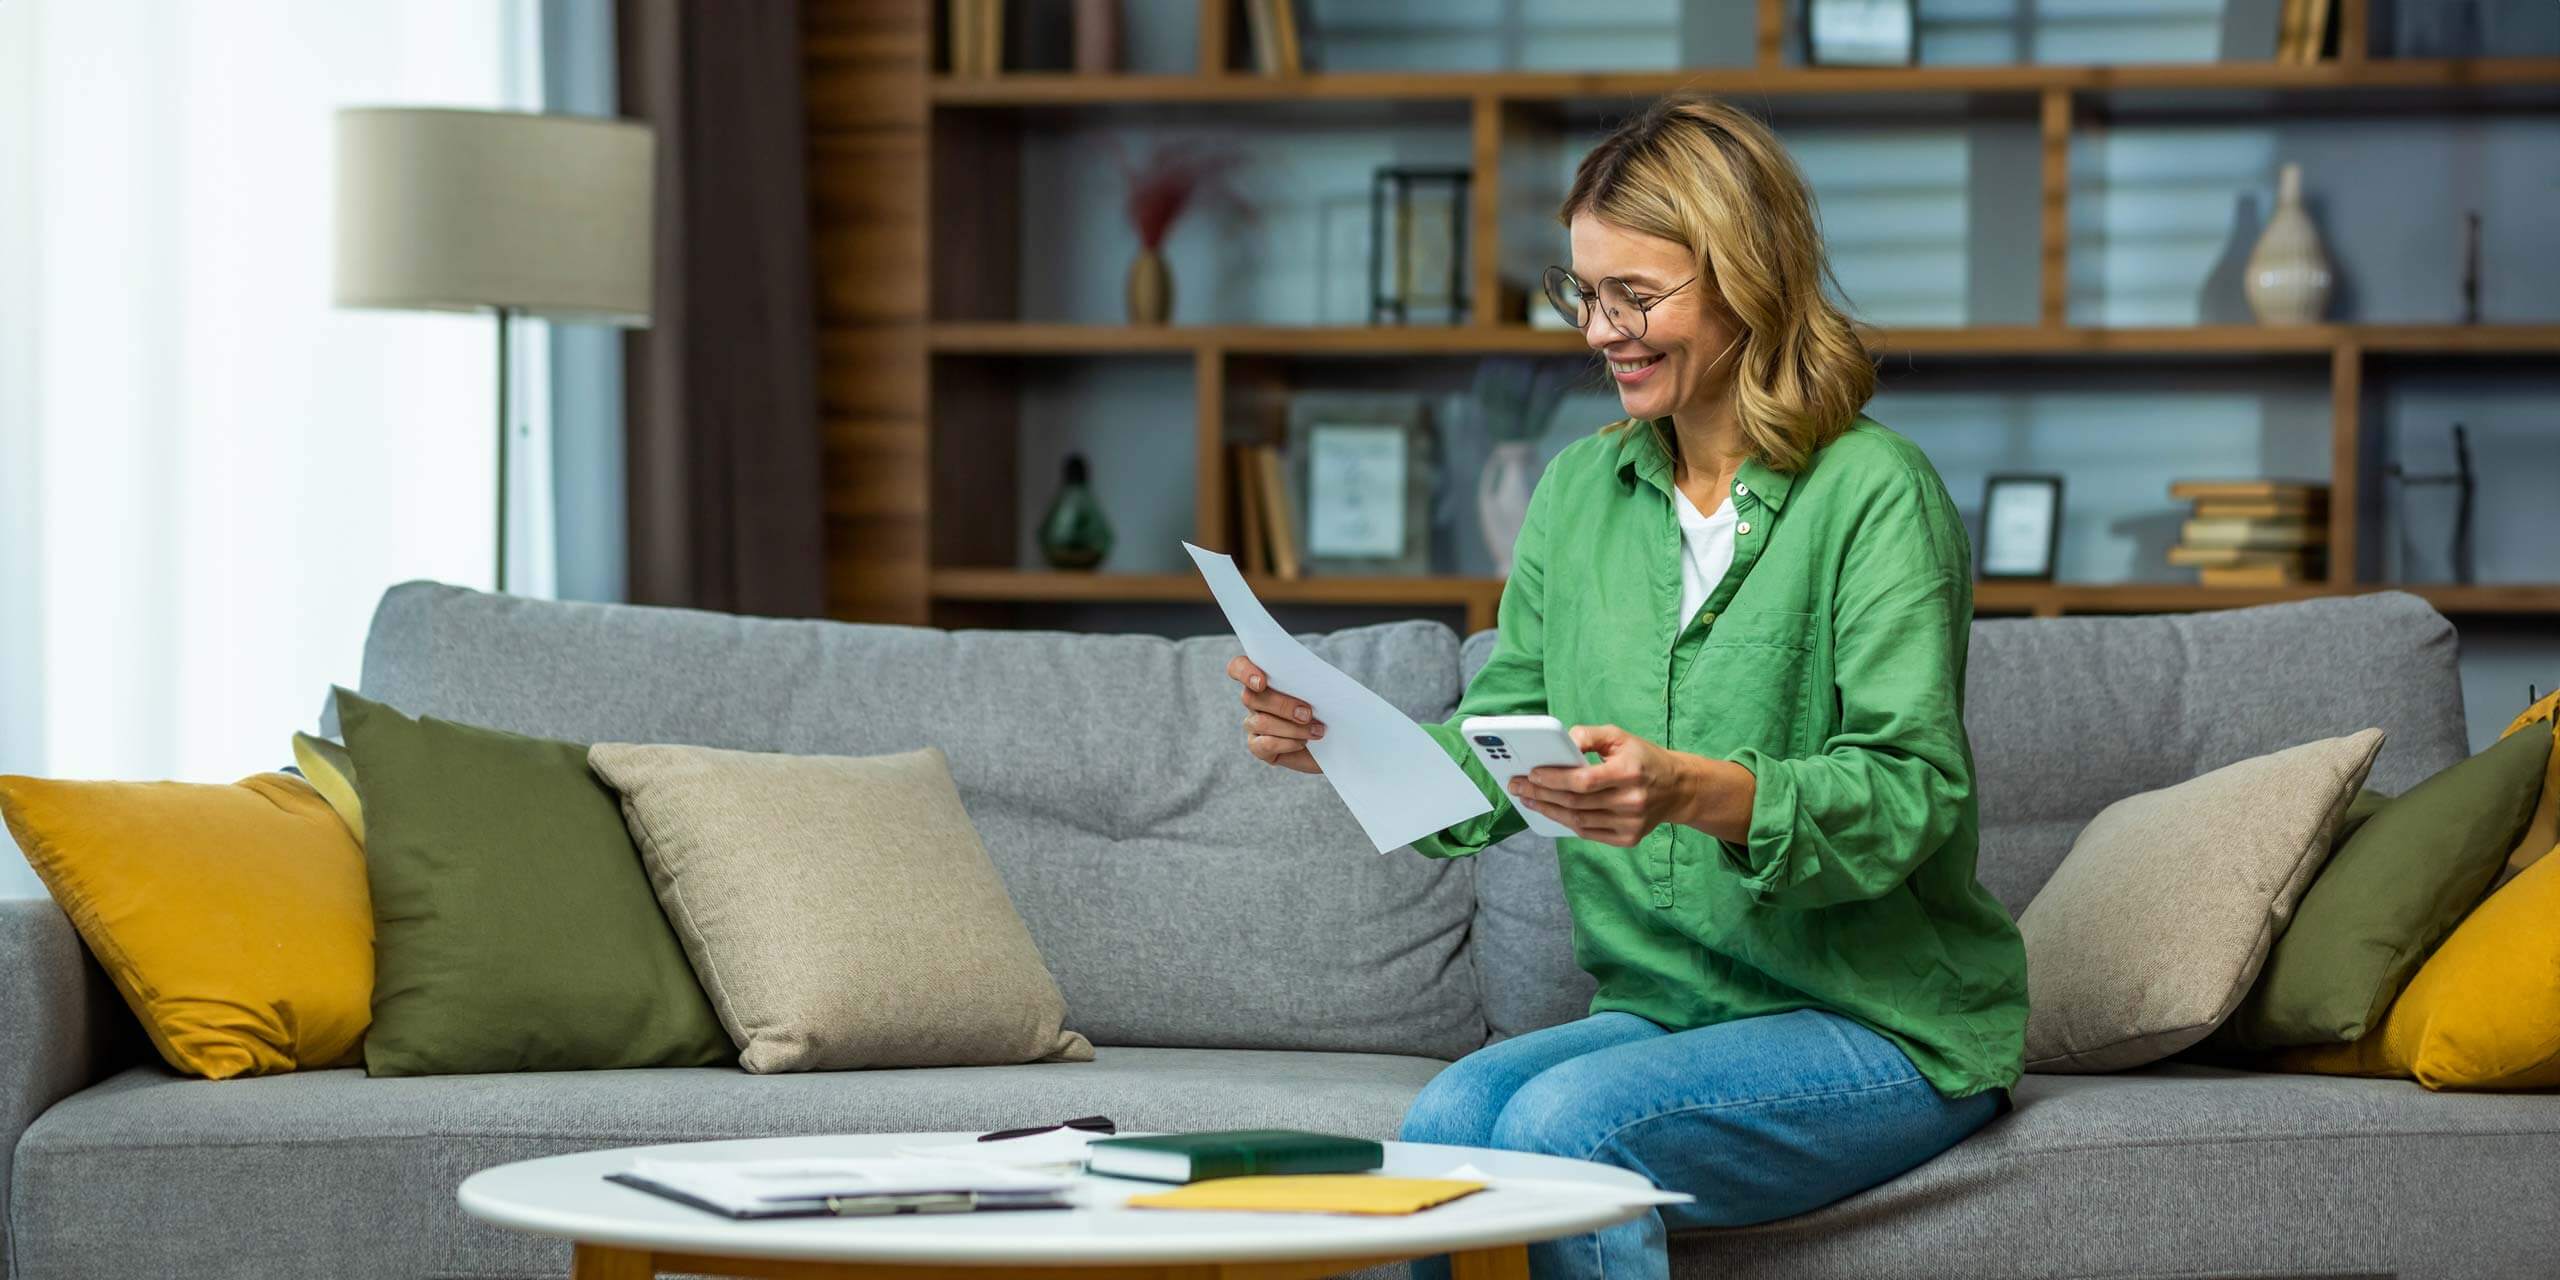 Eine lächelnde Frau sitzt in einem gemütlichen Wohnzimmer auf einer Couch und betrachtet ein Dokument. In der anderen Hand hält sie ein Tablet-PC.